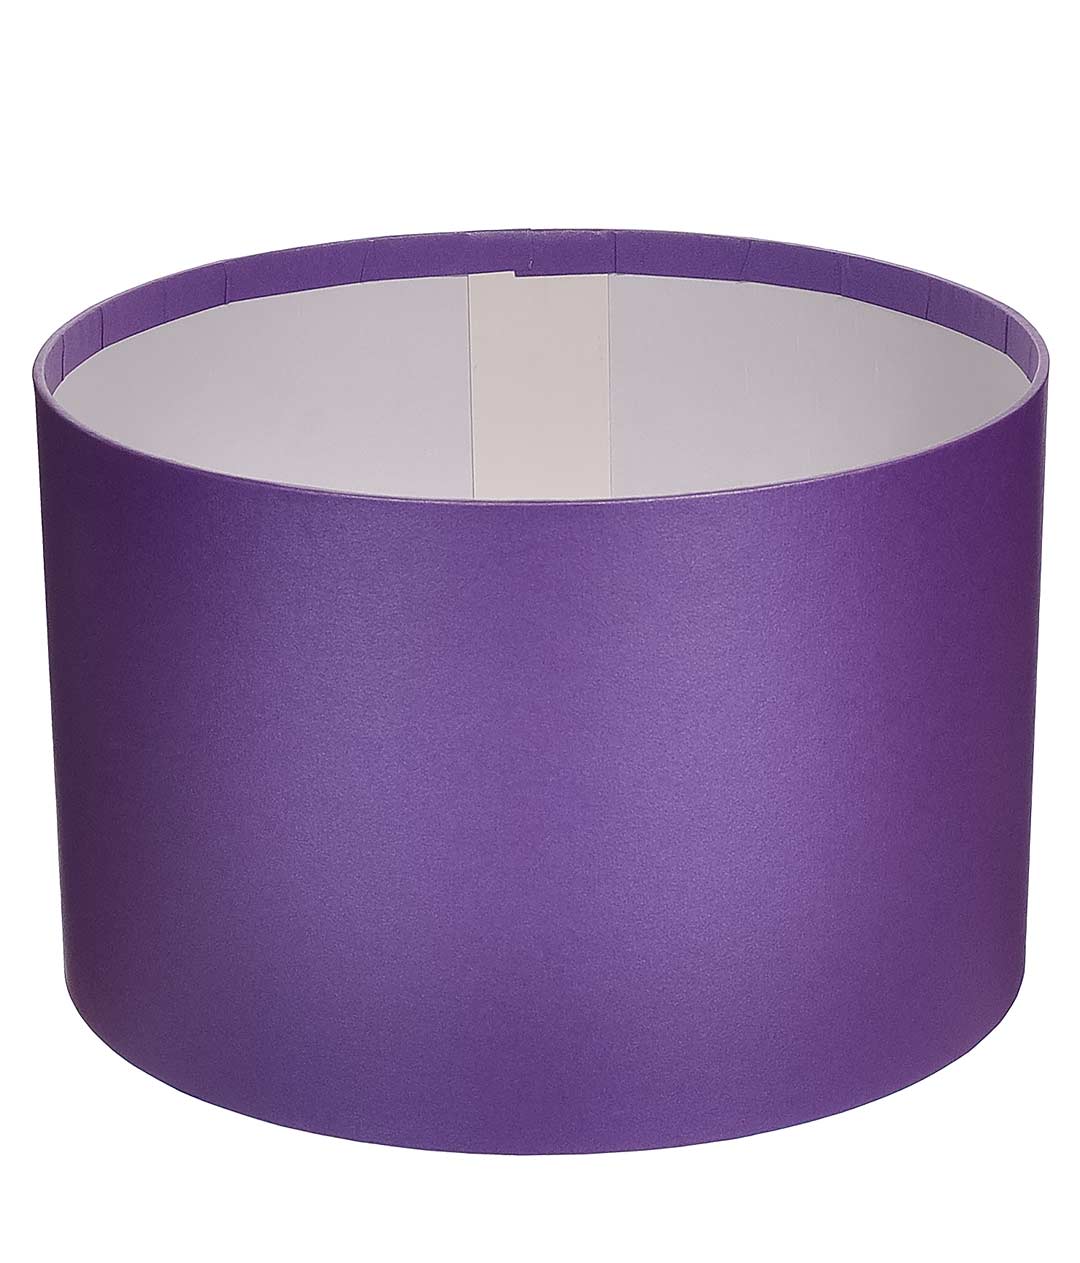 Изображение Коробка круглая для цветов фиолет из бумаги 220/140 без крышки